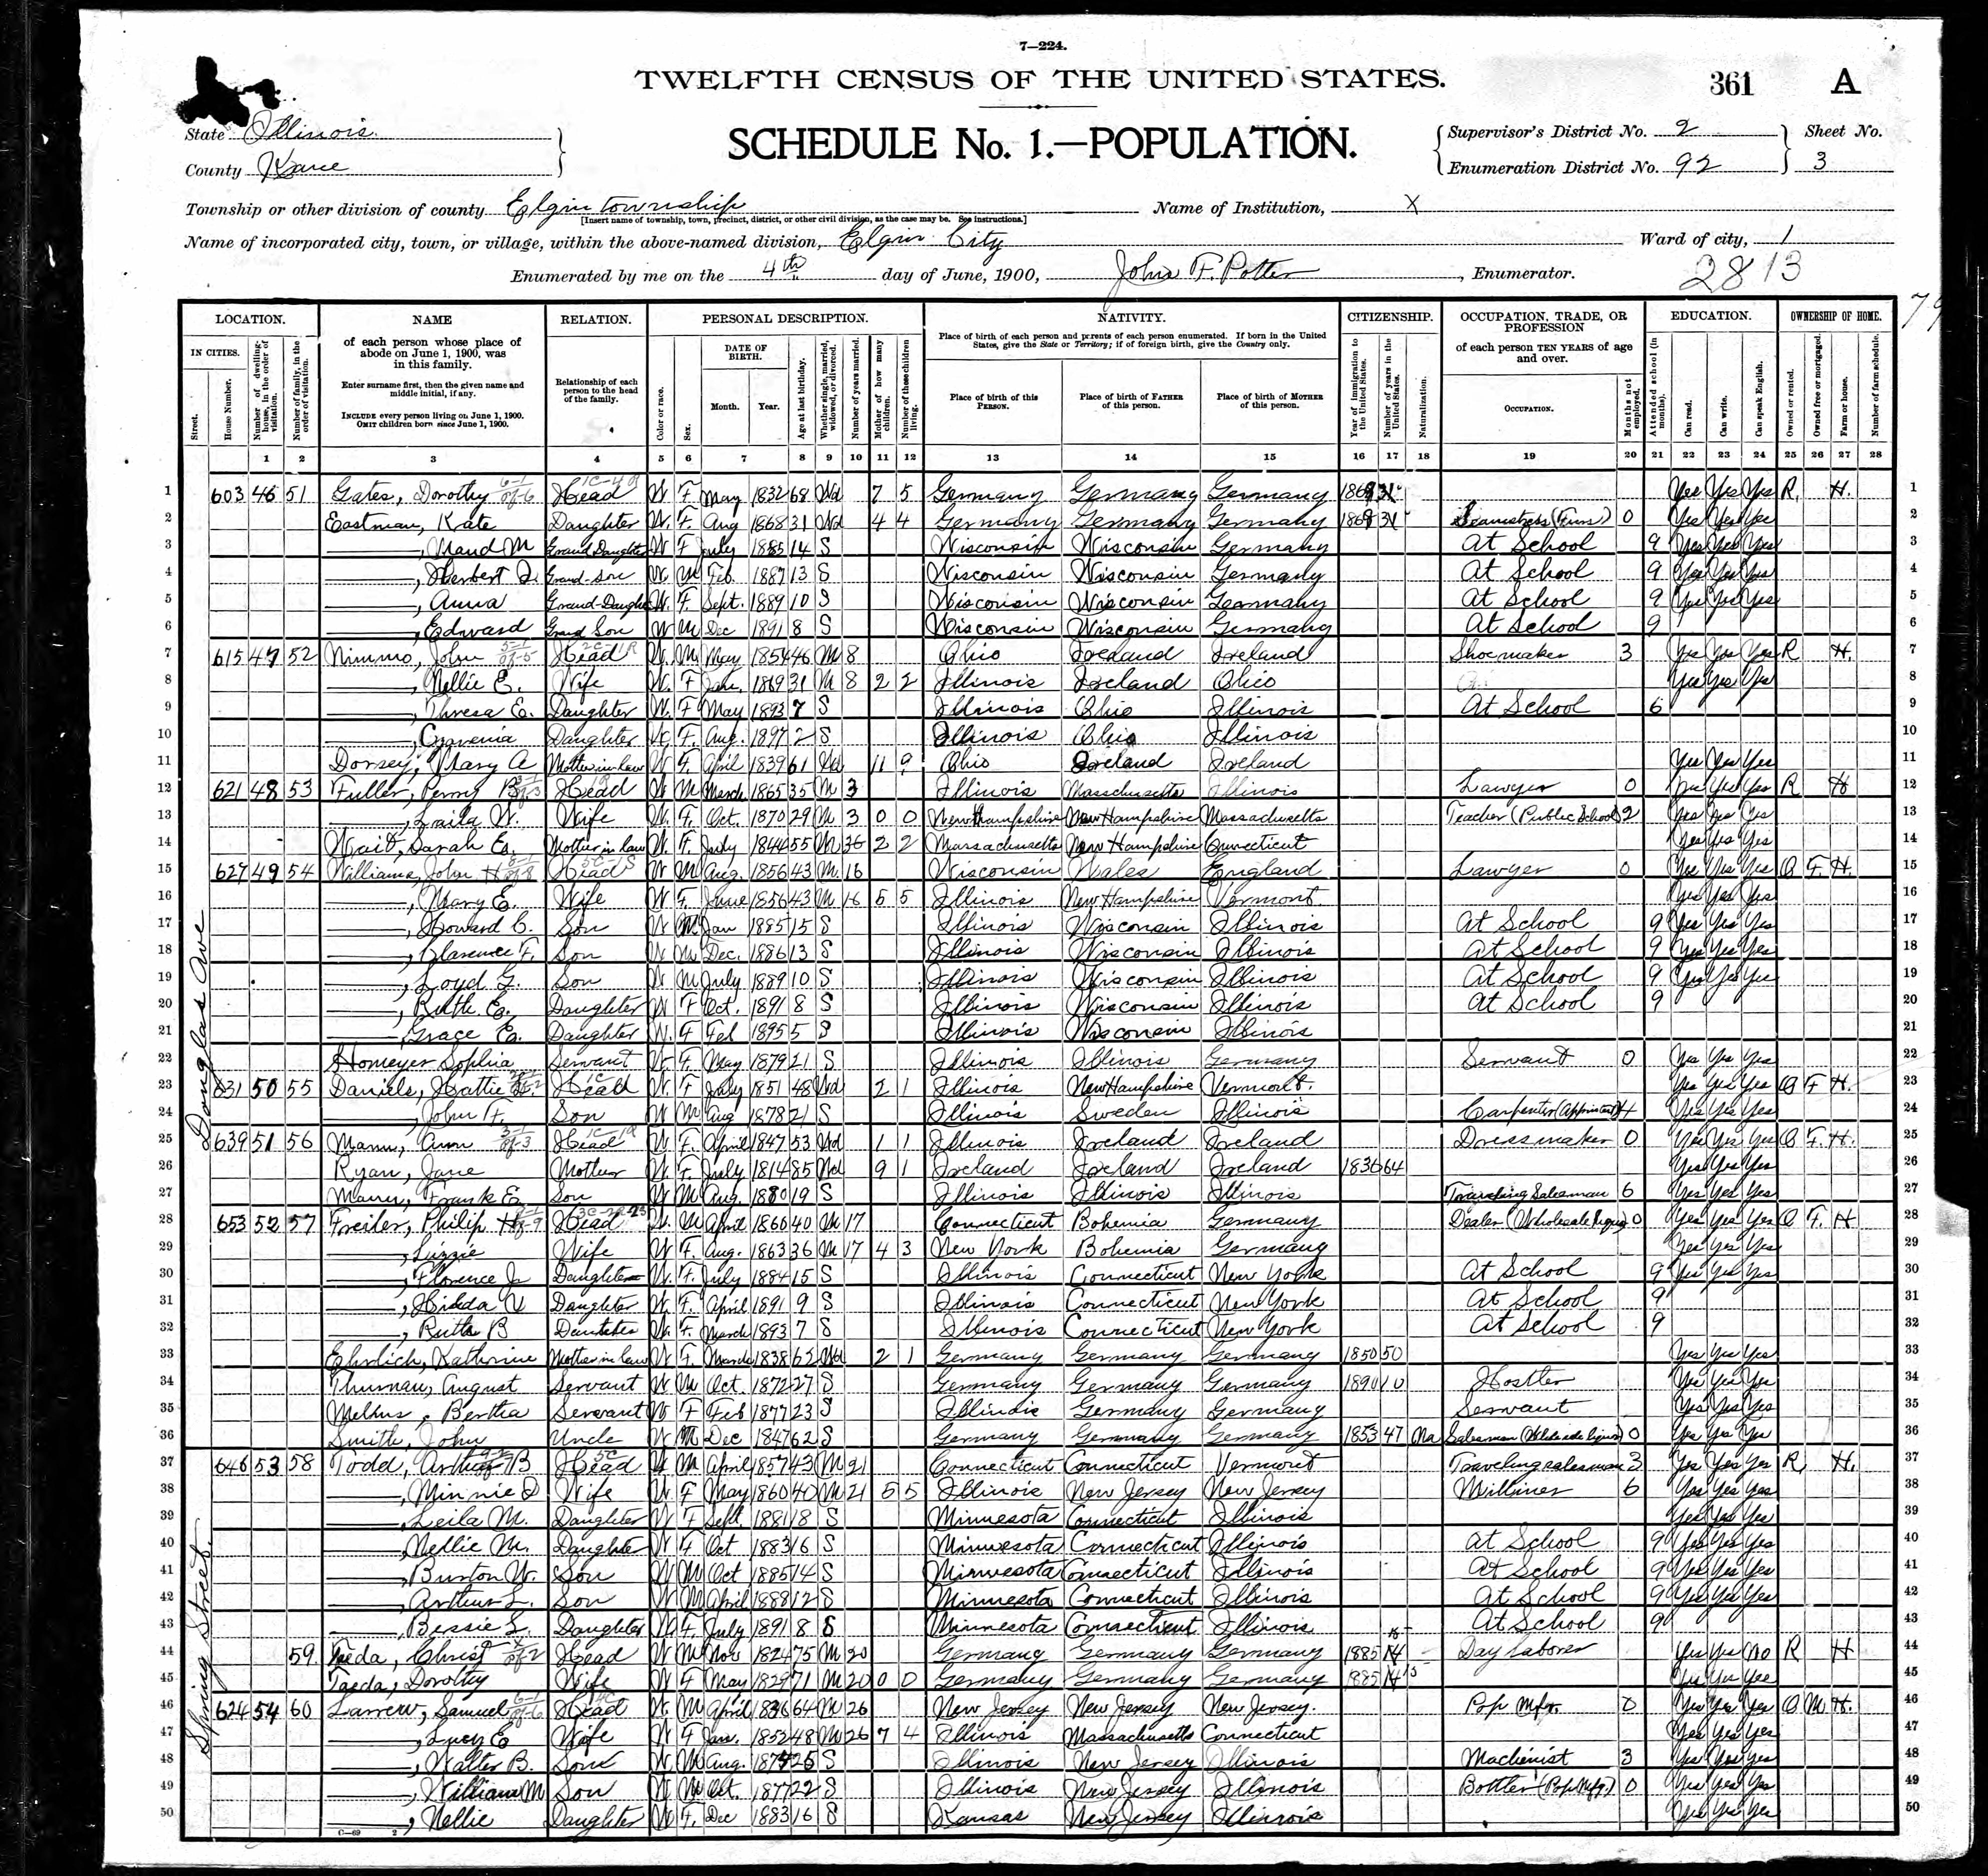 1900 US census Philip Freiler family